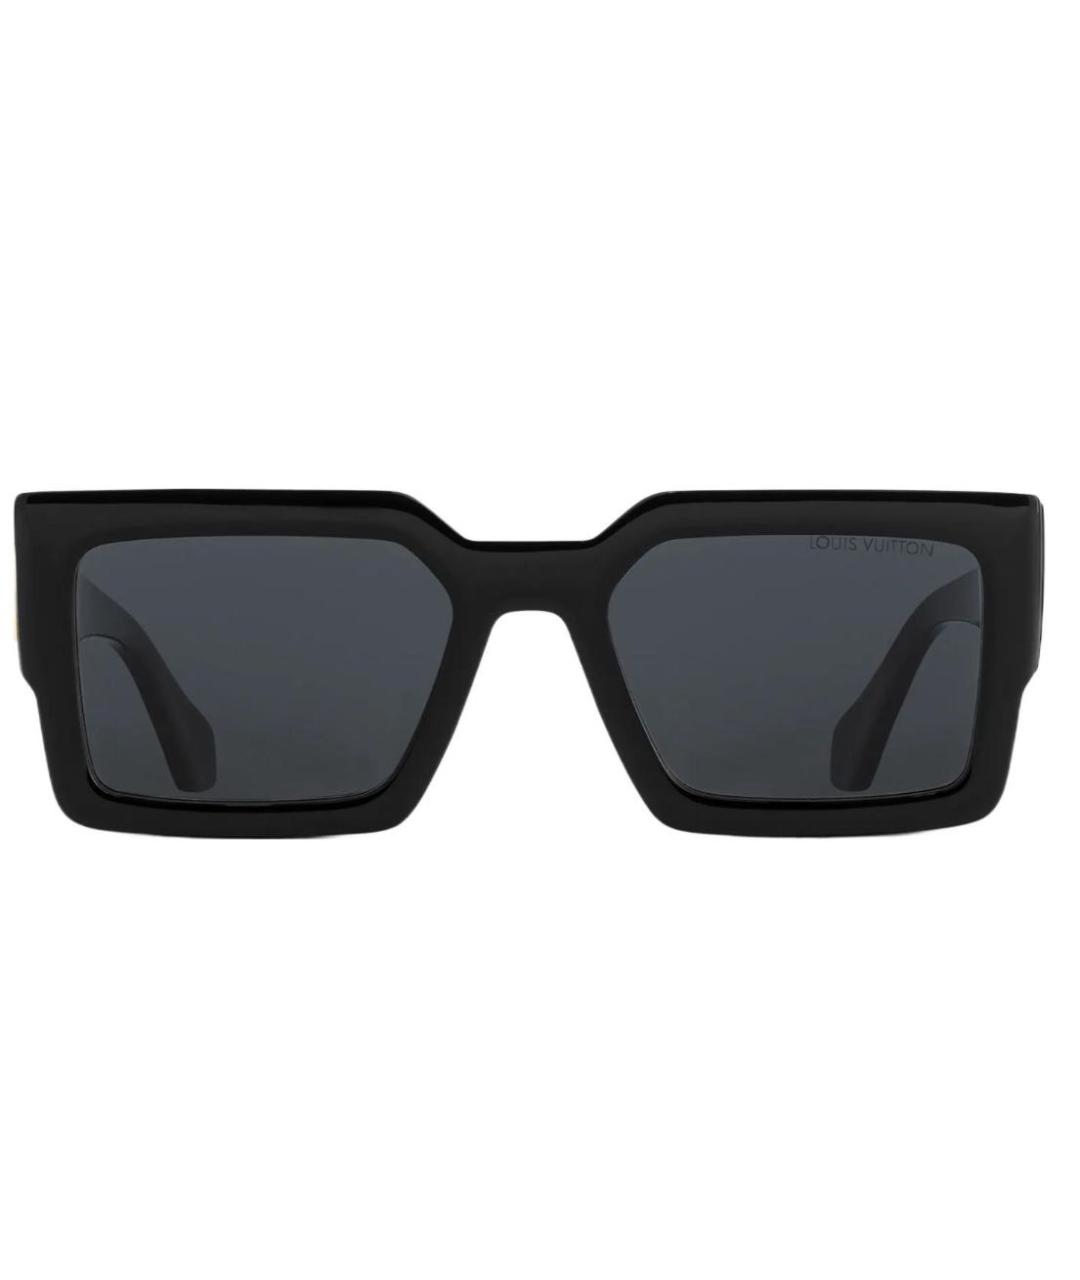 LOUIS VUITTON PRE-OWNED Черные солнцезащитные очки, фото 2